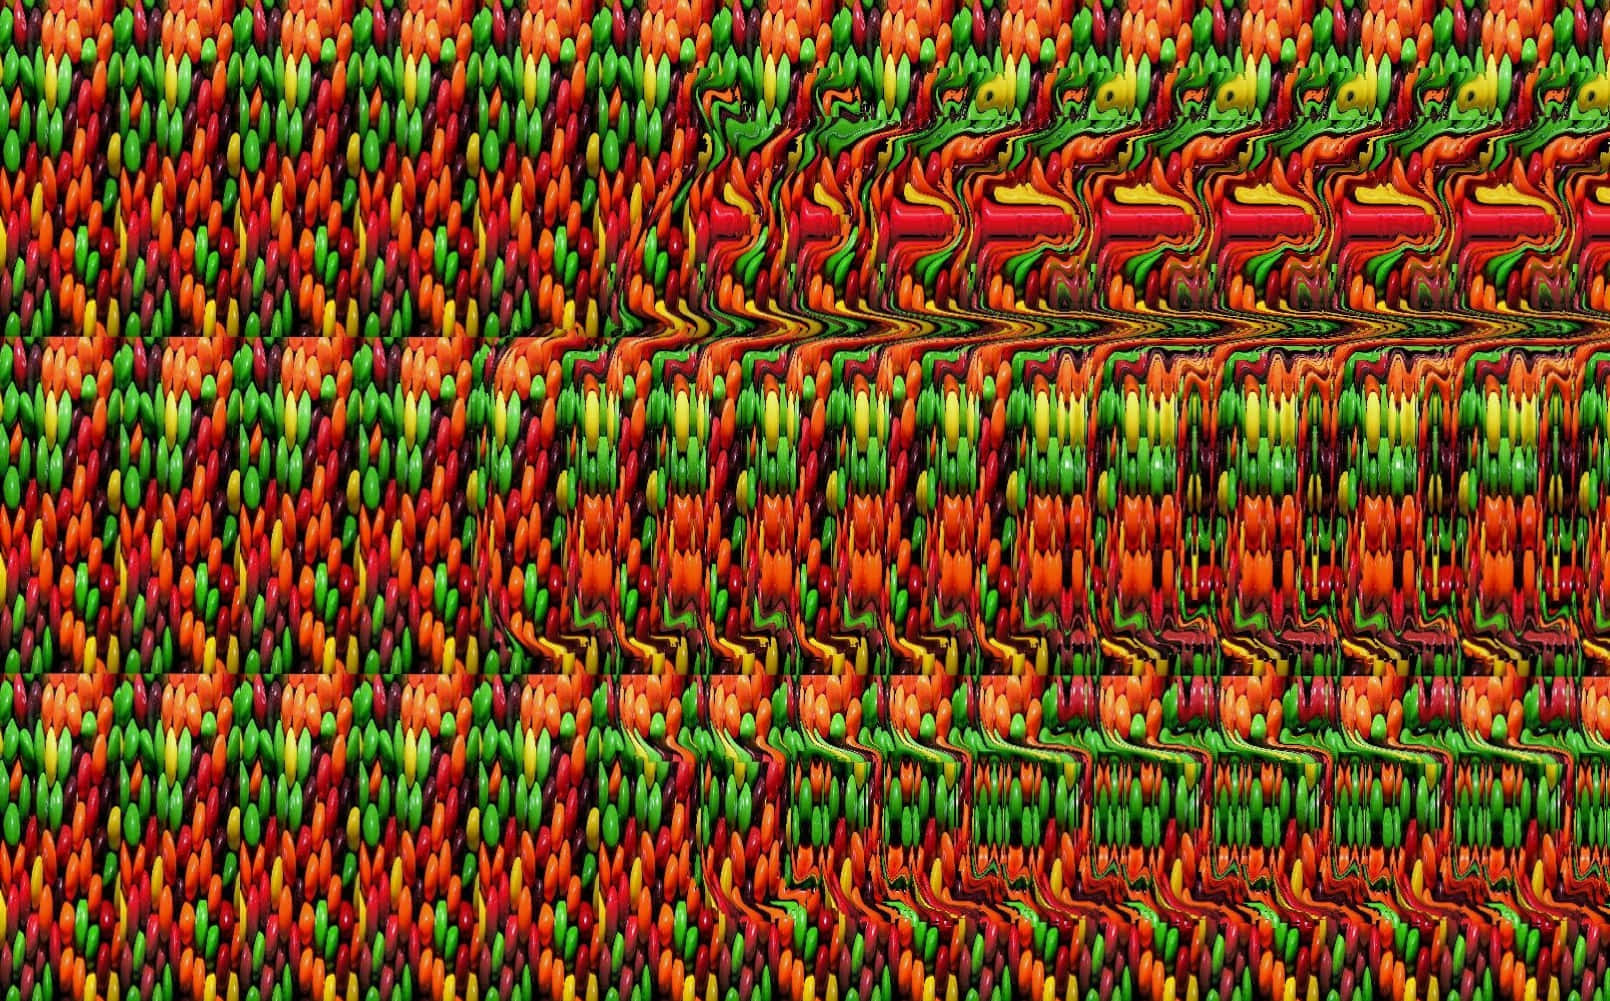 Abstrakt Glitch Pattern Magic Eye 3D Stereogram Billede af en farverig abstrakt mønster af rød, grøn og gul.